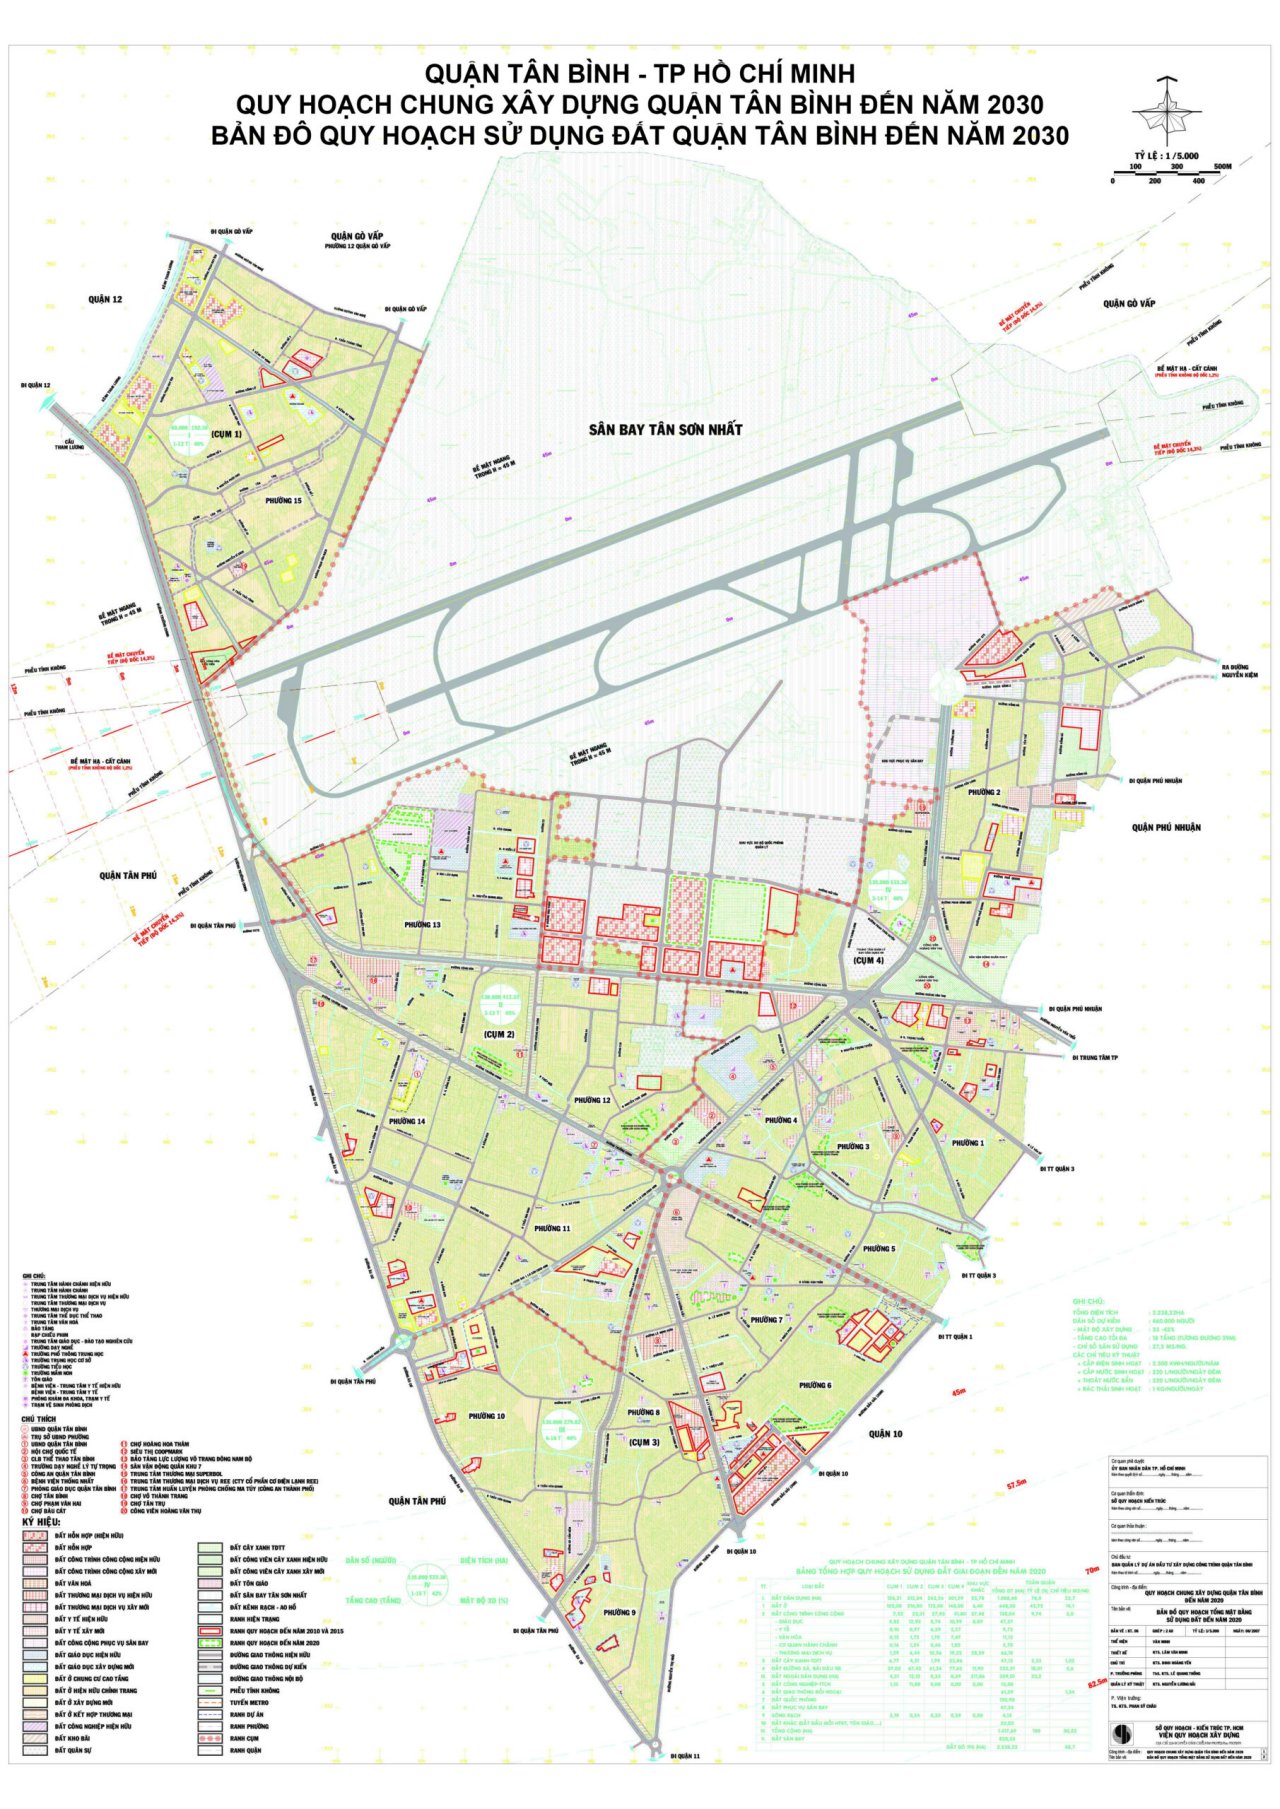 Bản đồ quy hoạch sử dụng đất Quận Tân Bình đến năm 2030